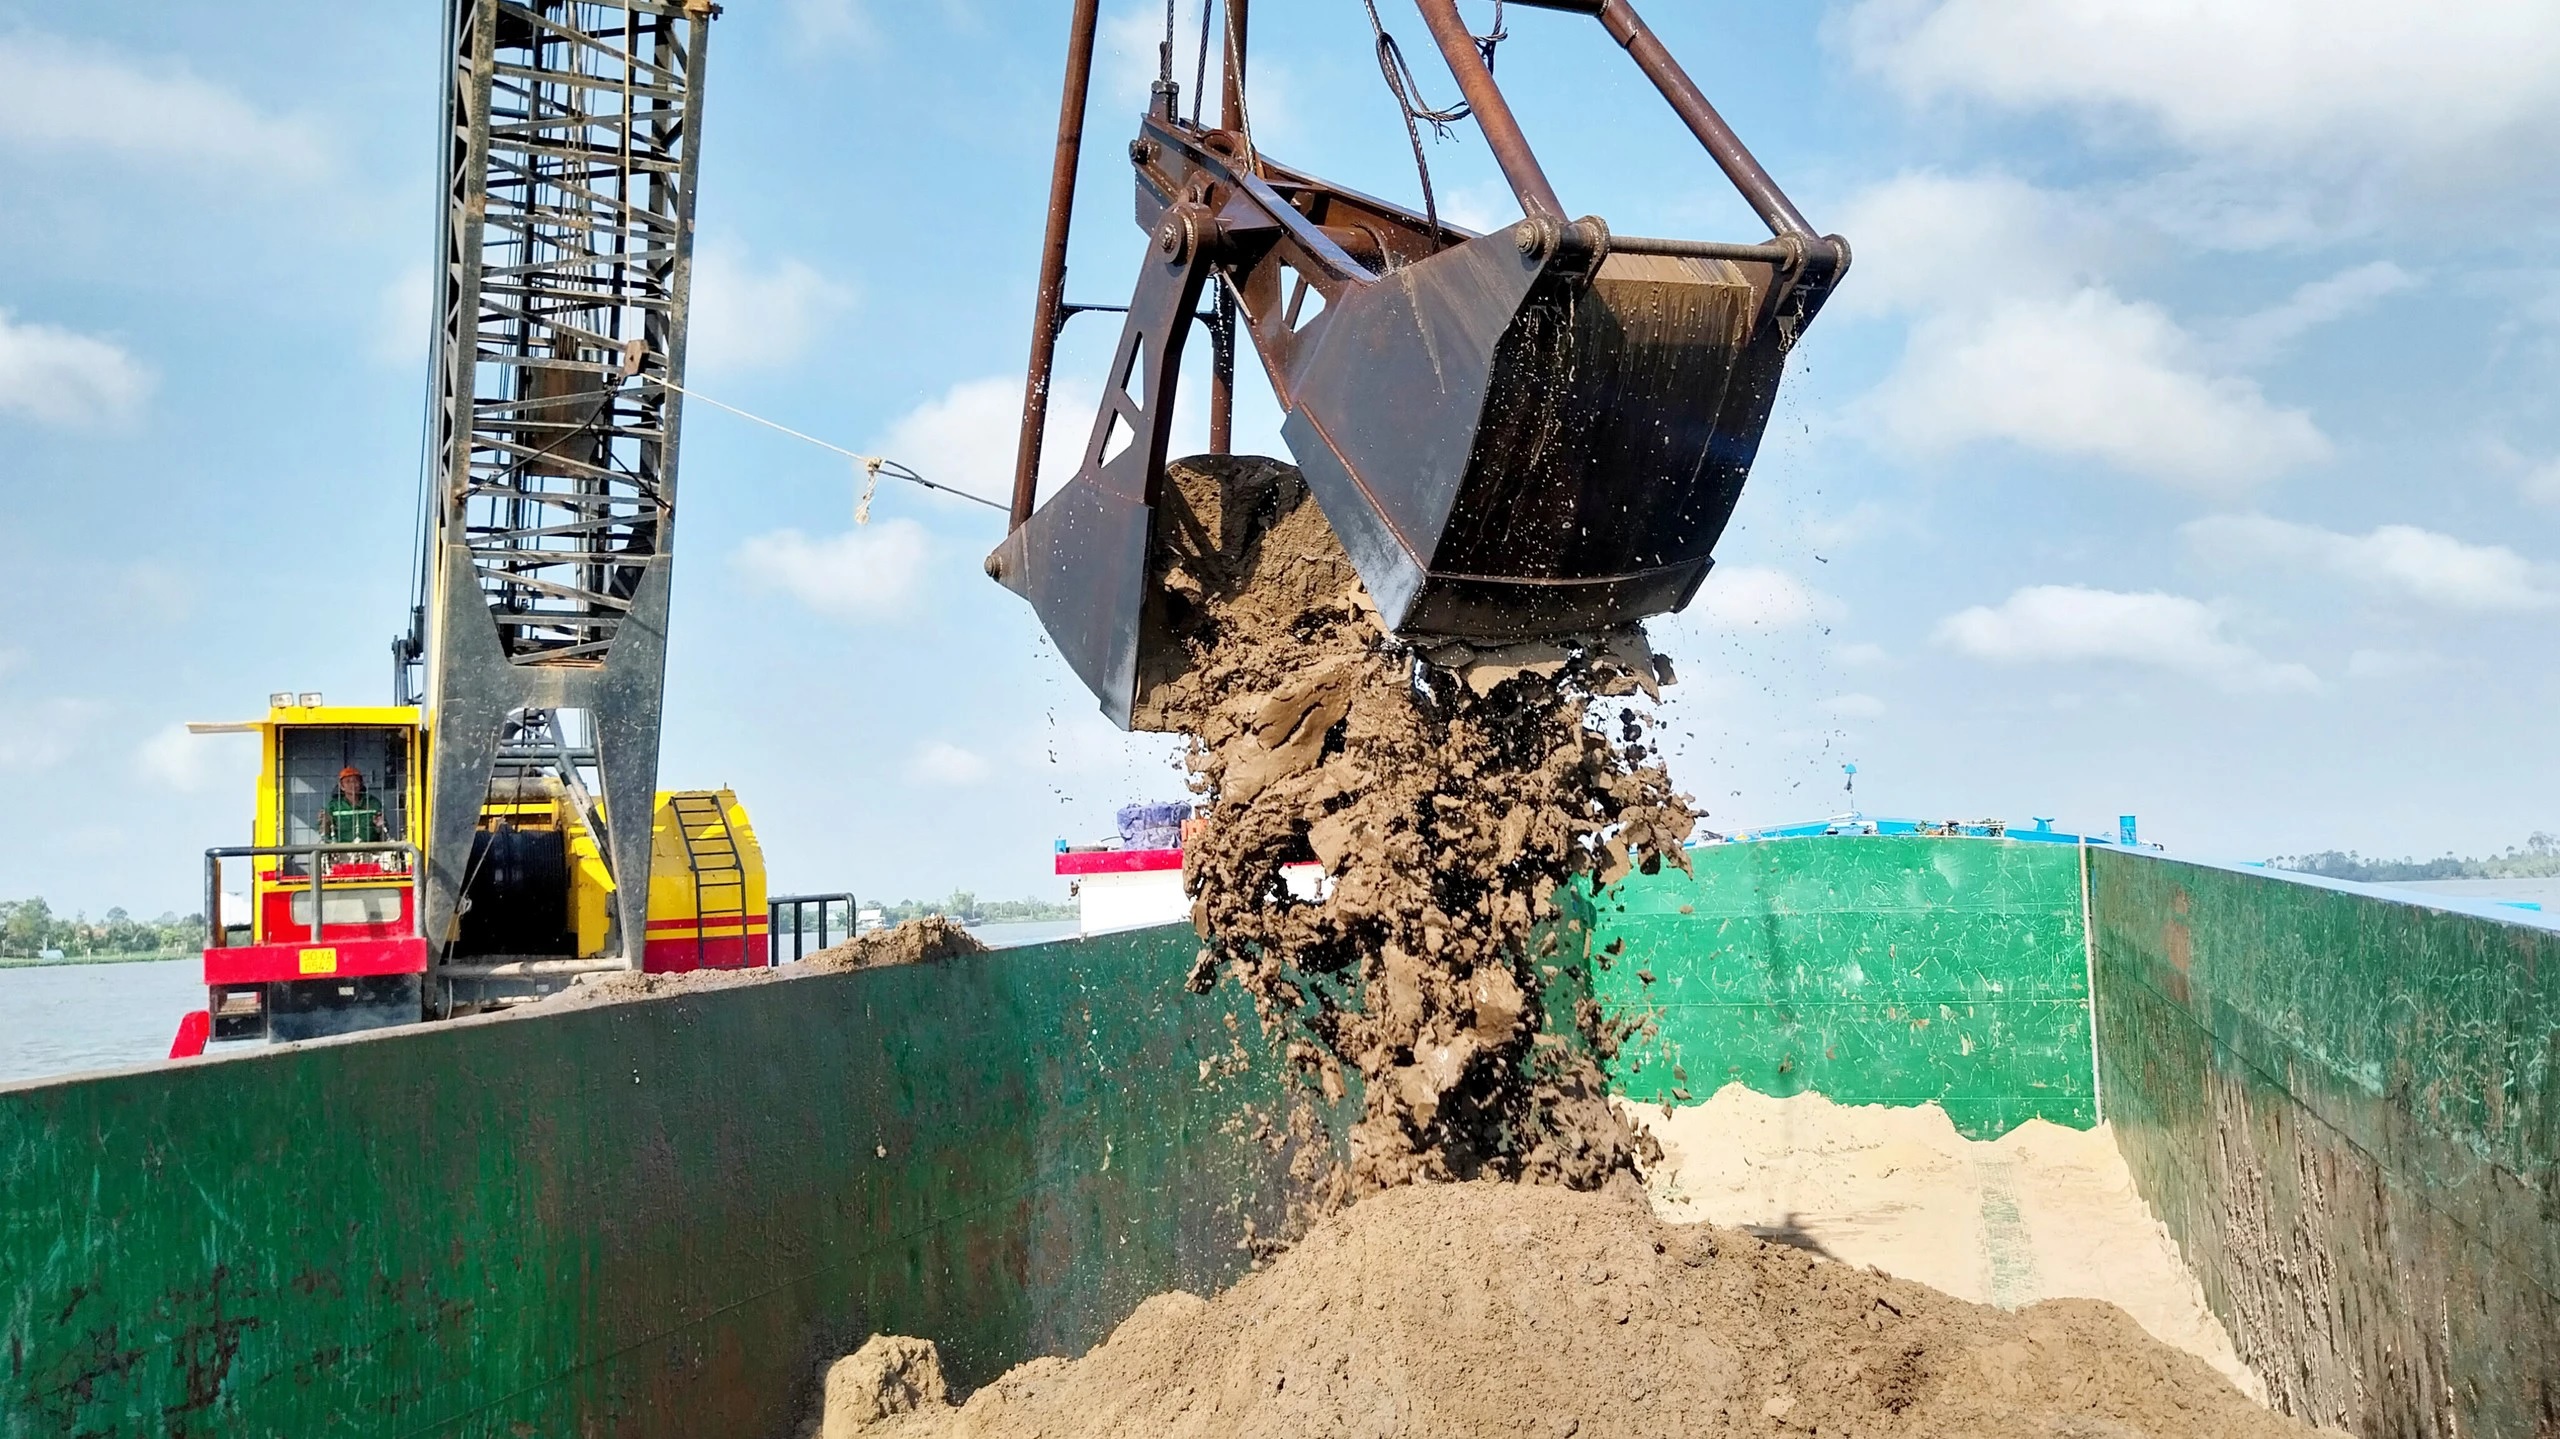 Bộ trưởng GTVT giao Ban quản lý dự án phối hợp địa phương nâng công suất mỏ cát- Ảnh 2.